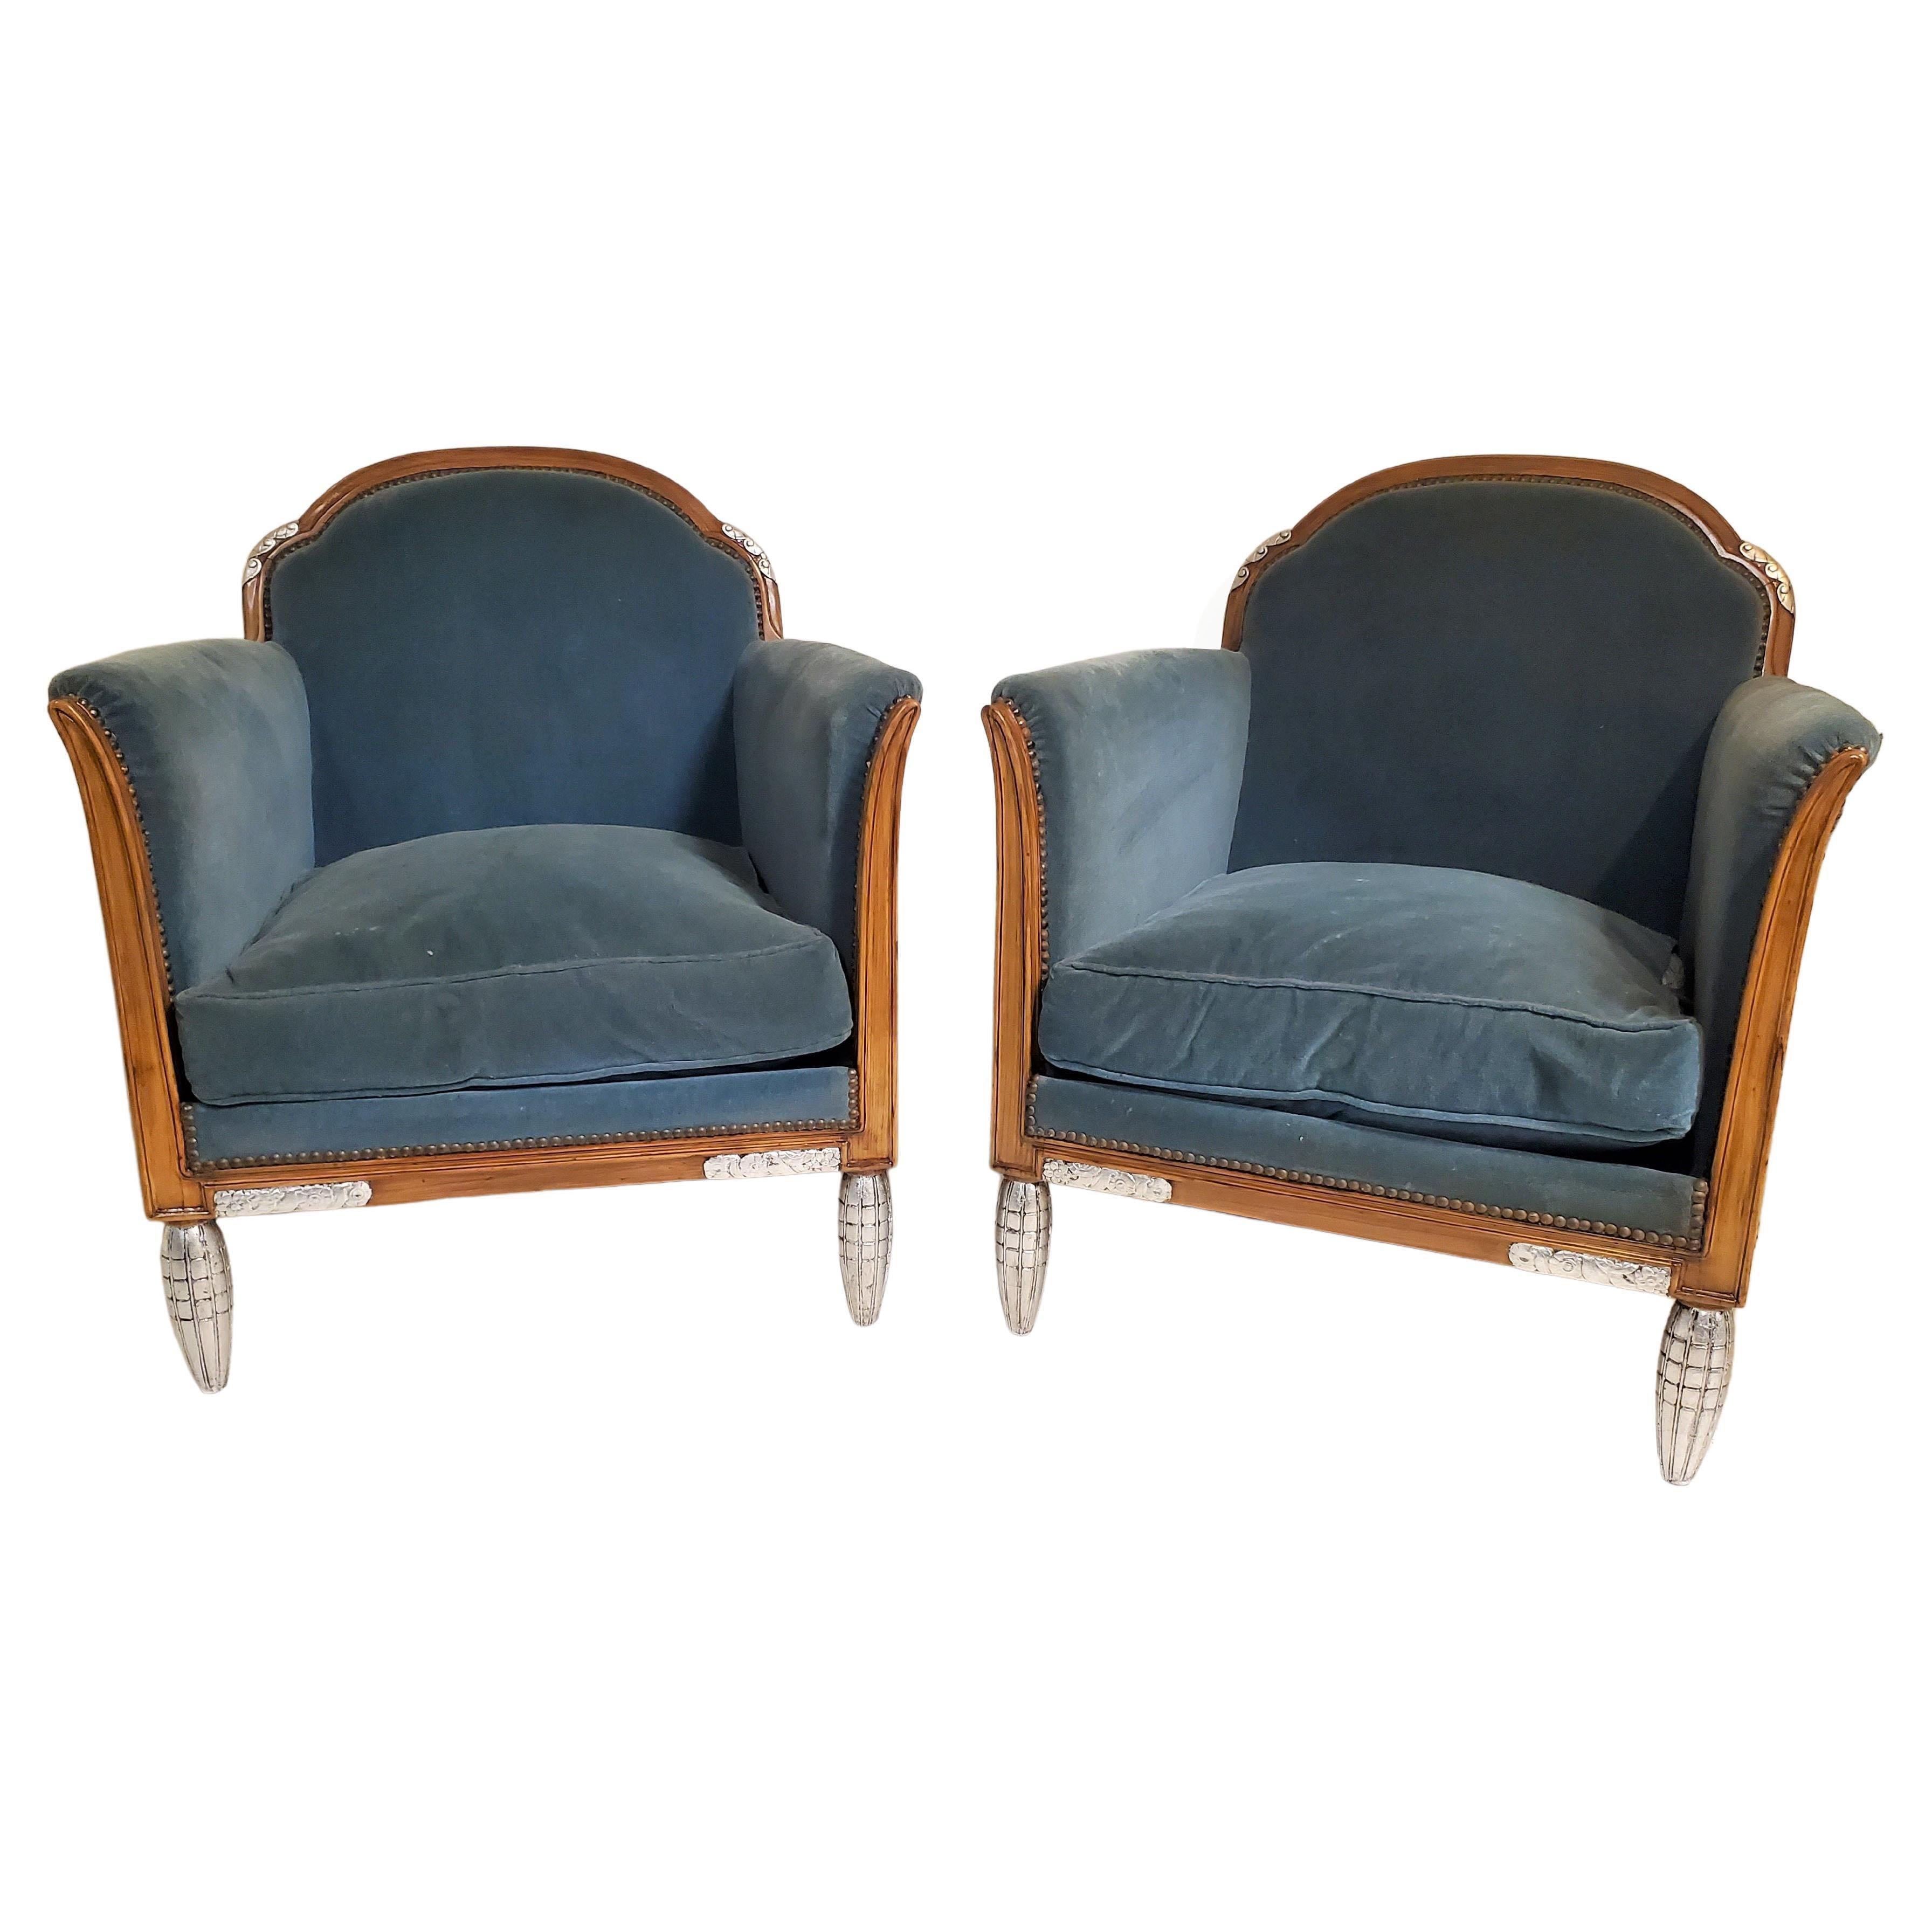 Magnifique paire de fauteuils Art Déco français attribués à Paul Follot (1877-1941), confortables et spacieux, dotés de dossiers gracieusement incurvés et semi-arrondis et d'accoudoirs en forme de lames stylisées qui s'ouvrent pour créer une